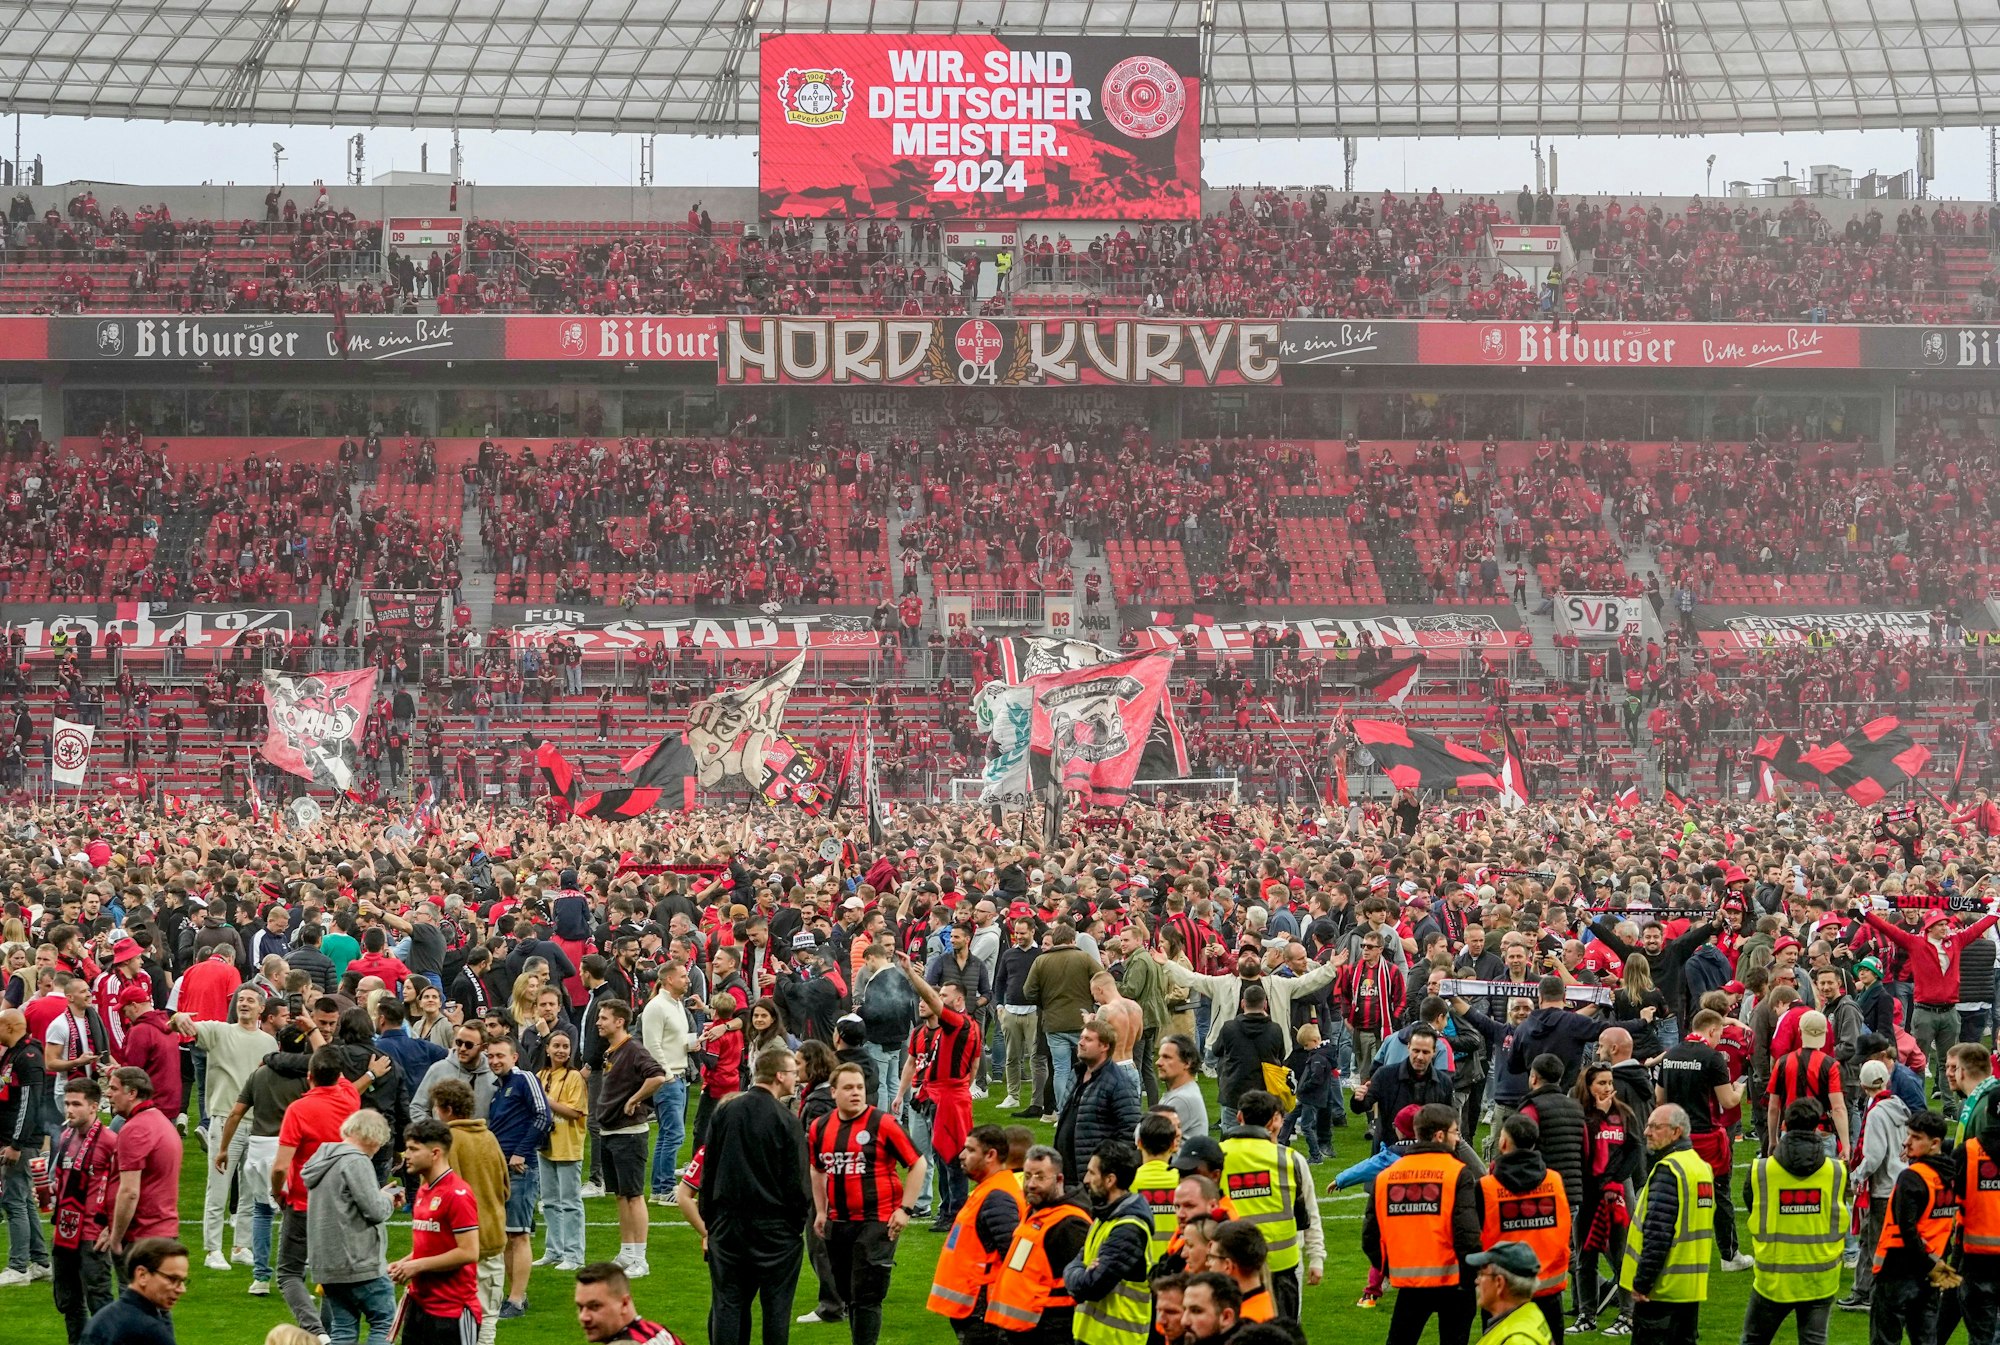 Nach dem Sieg gegen Bremen und dem Gewinn der Meisterschaft feierten viele Fans von Bayer Leverkusen auf dem Rasen.